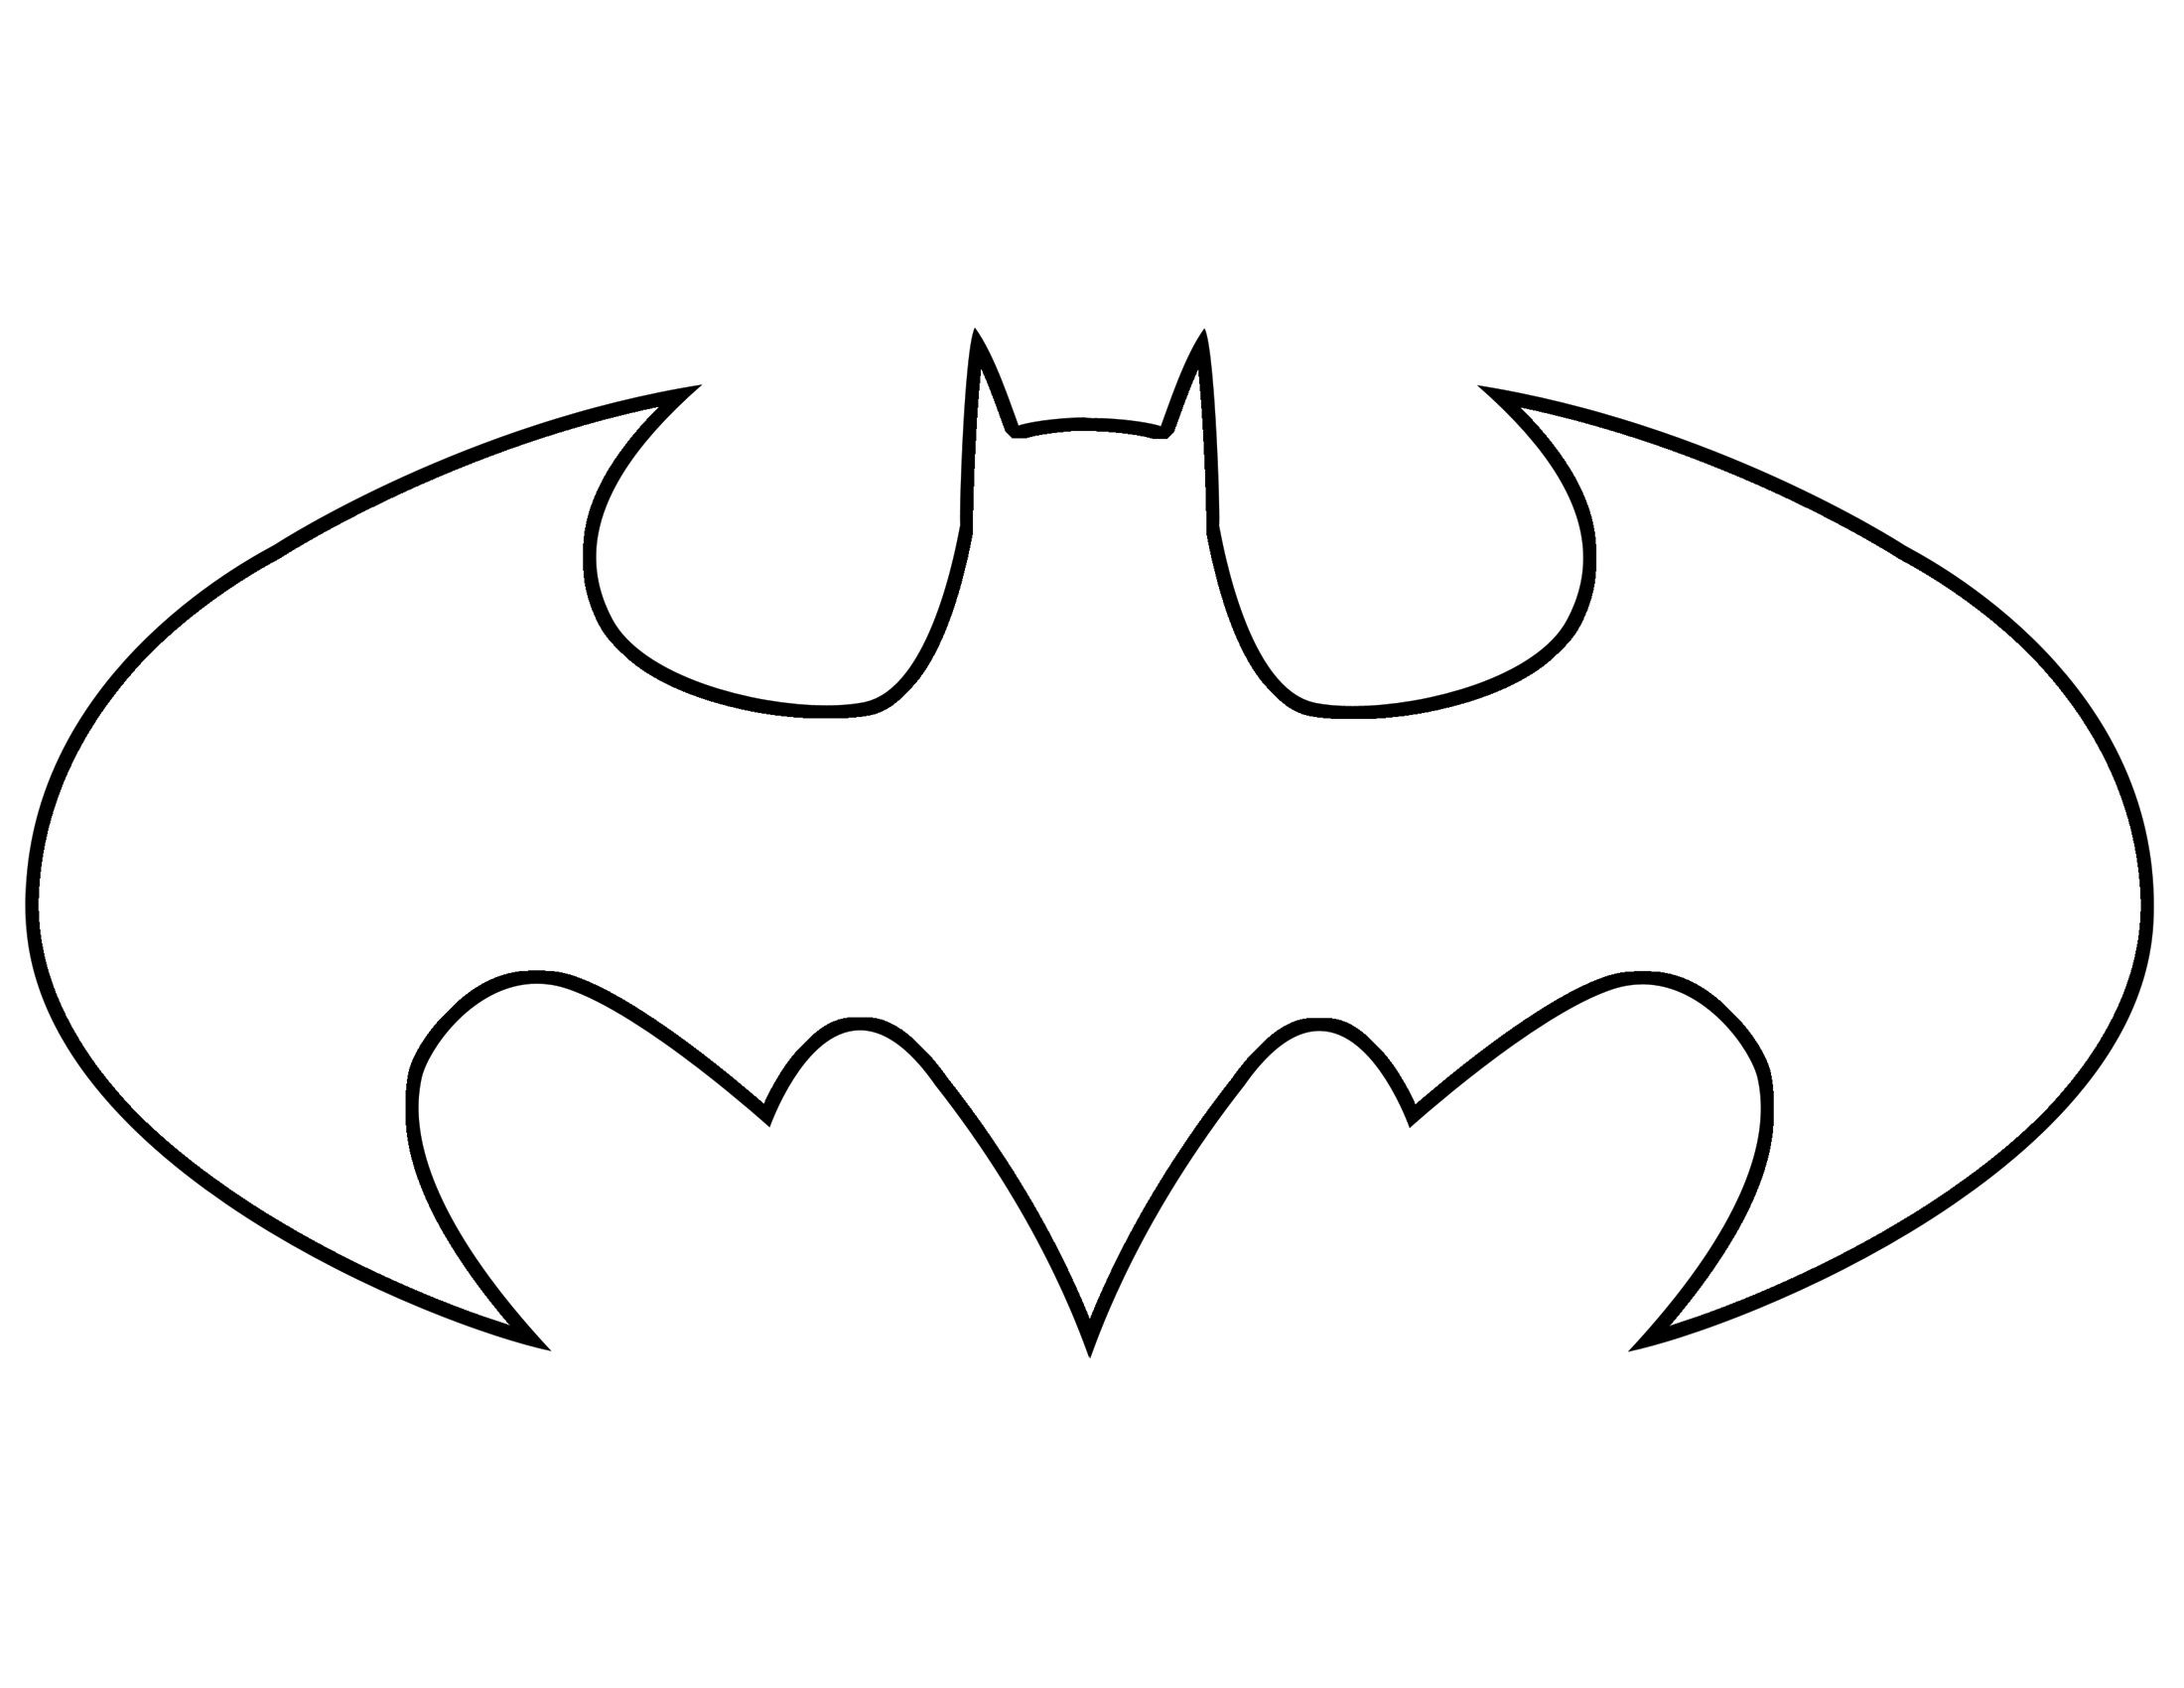 batman clipart batman logo